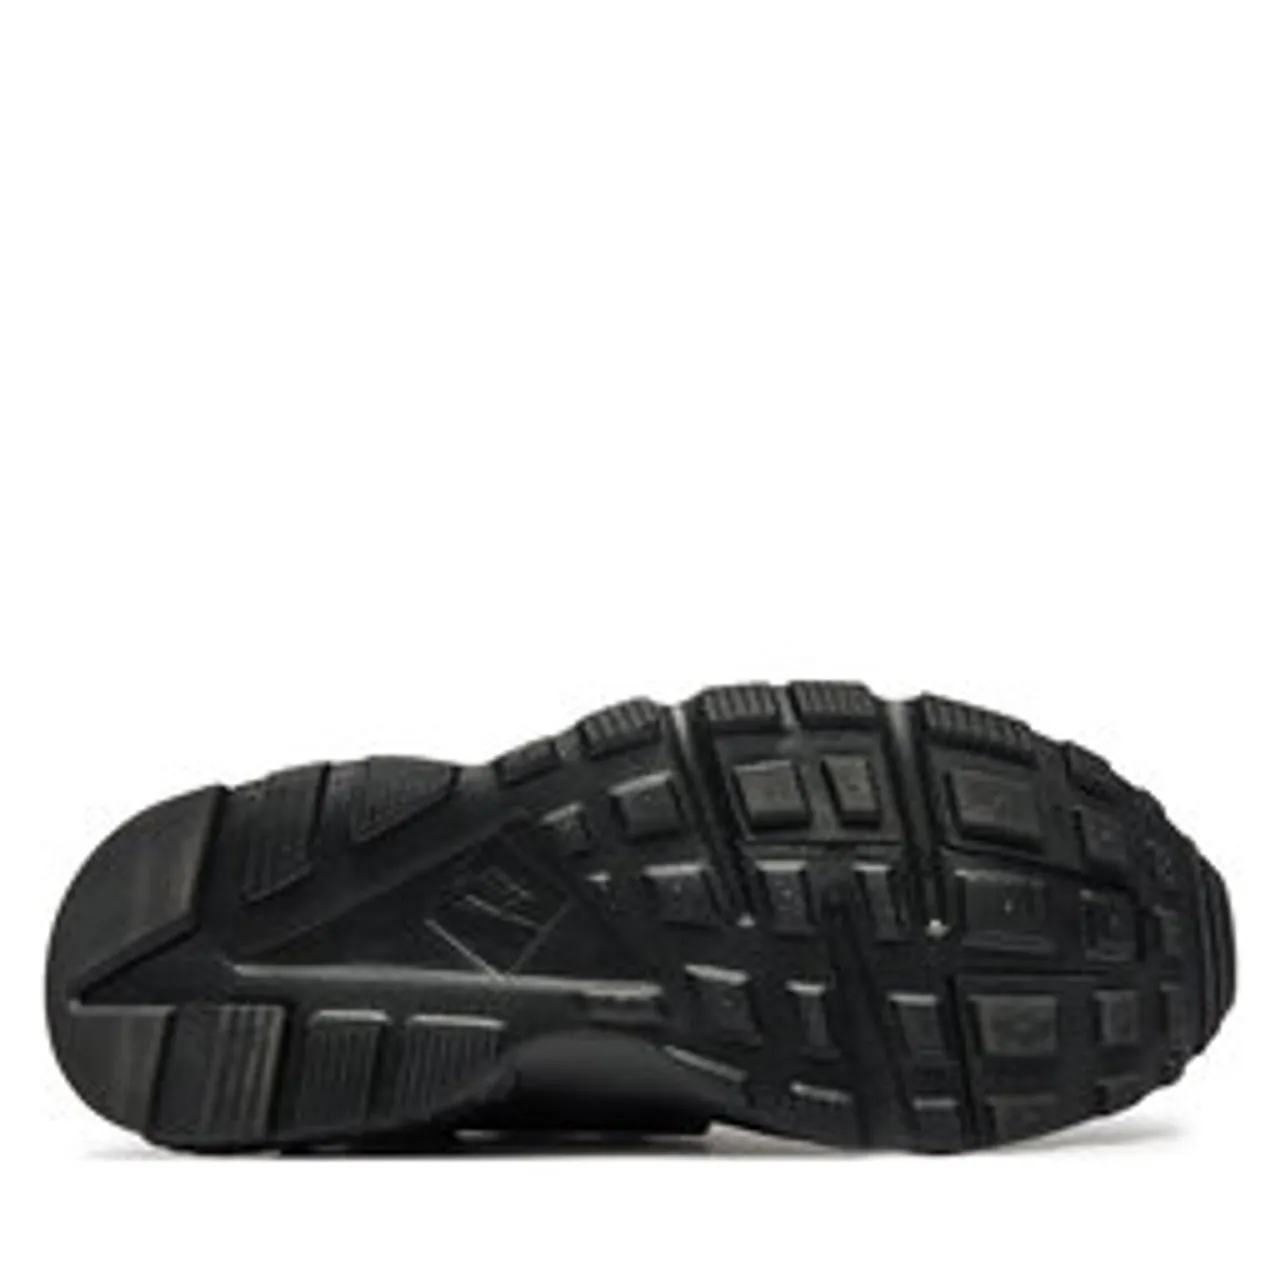 Sneakers Nike Huarache Run (GS) 654275 016 Schwarz